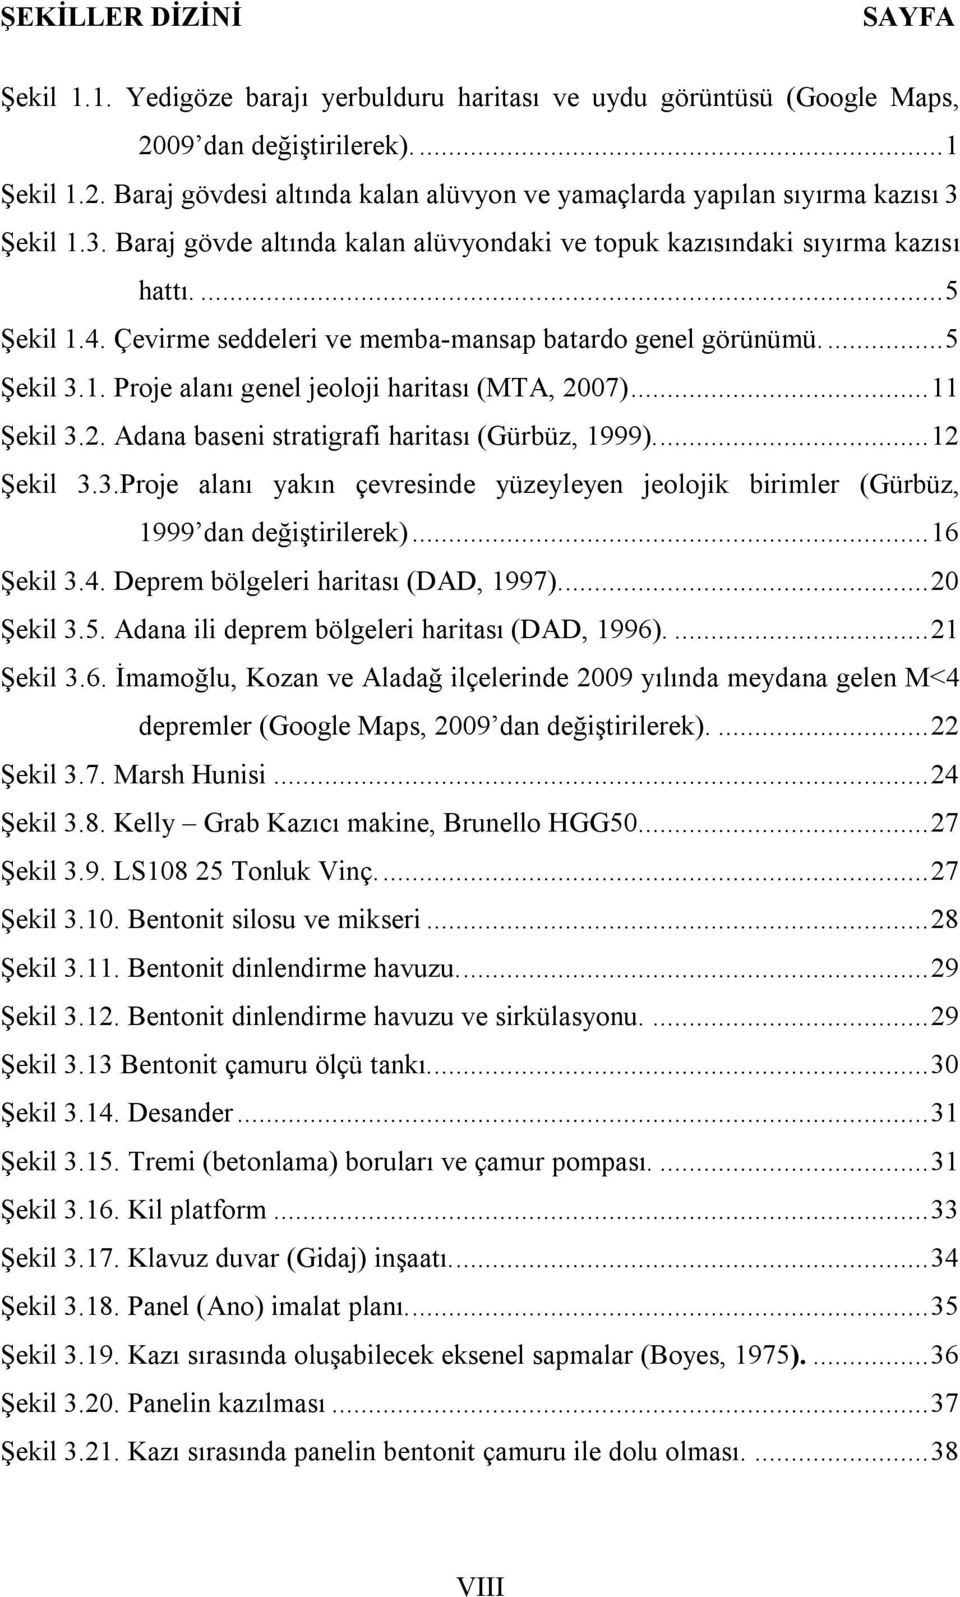 .. 11 Şekil 3.2. Adana baseni stratigrafi haritası (Gürbüz, 1999).... 12 Şekil 3.3.Proje alanı yakın çevresinde yüzeyleyen jeolojik birimler (Gürbüz, 1999 dan değiştirilerek)... 16 Şekil 3.4.